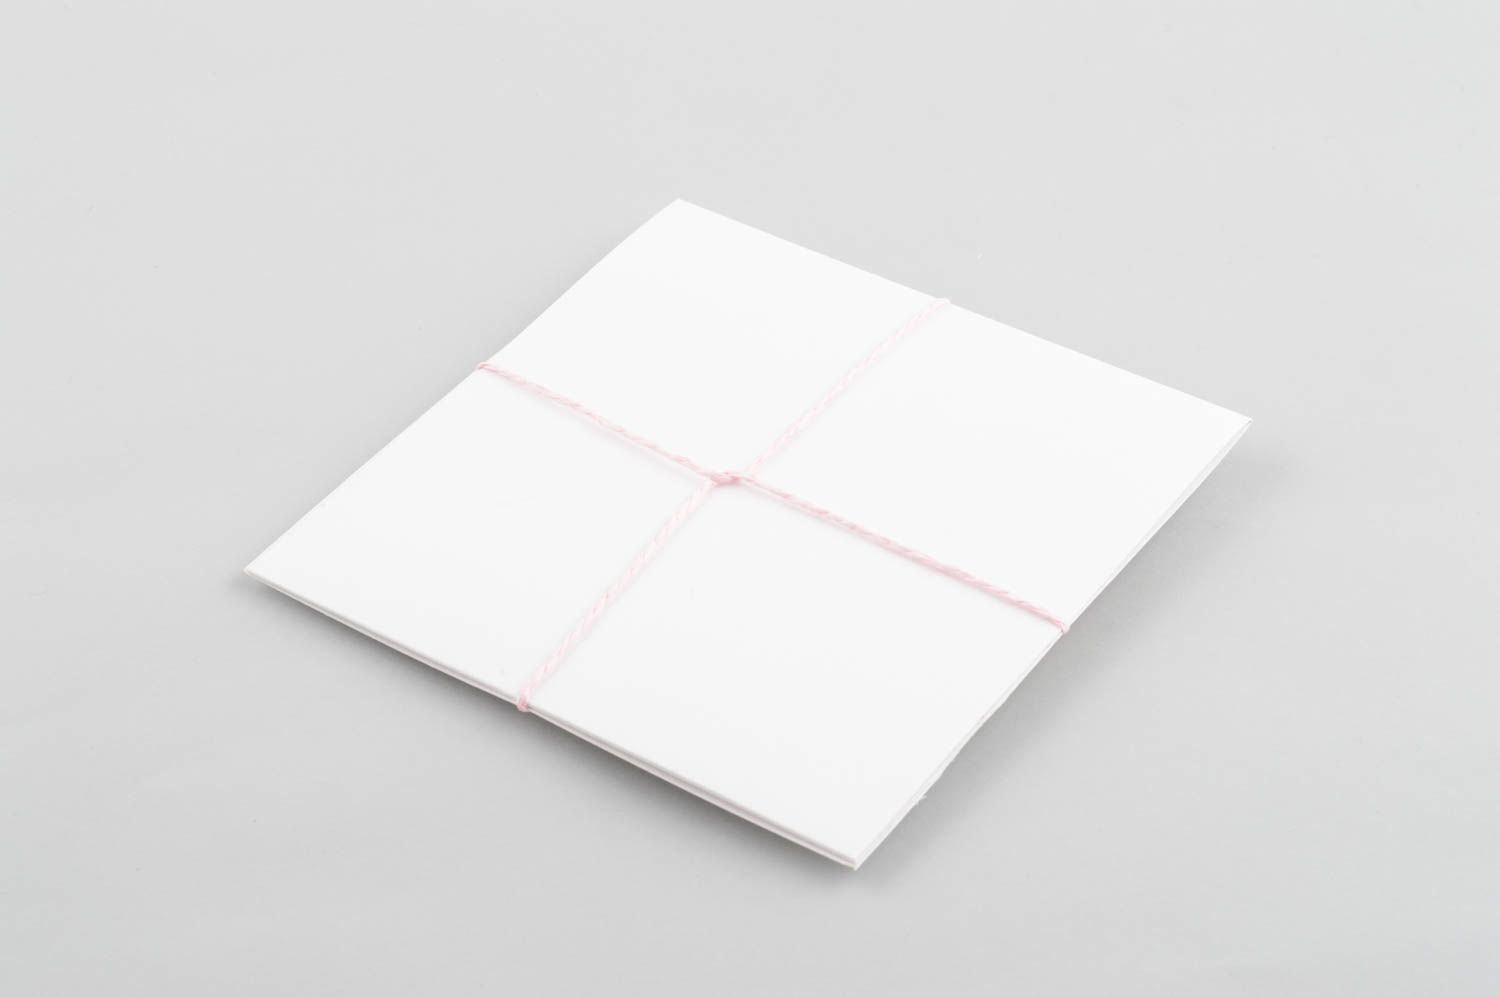 Handmade Papier CD Hülle kreatives Geschenk schöne Verpackung rosa hübsch foto 4